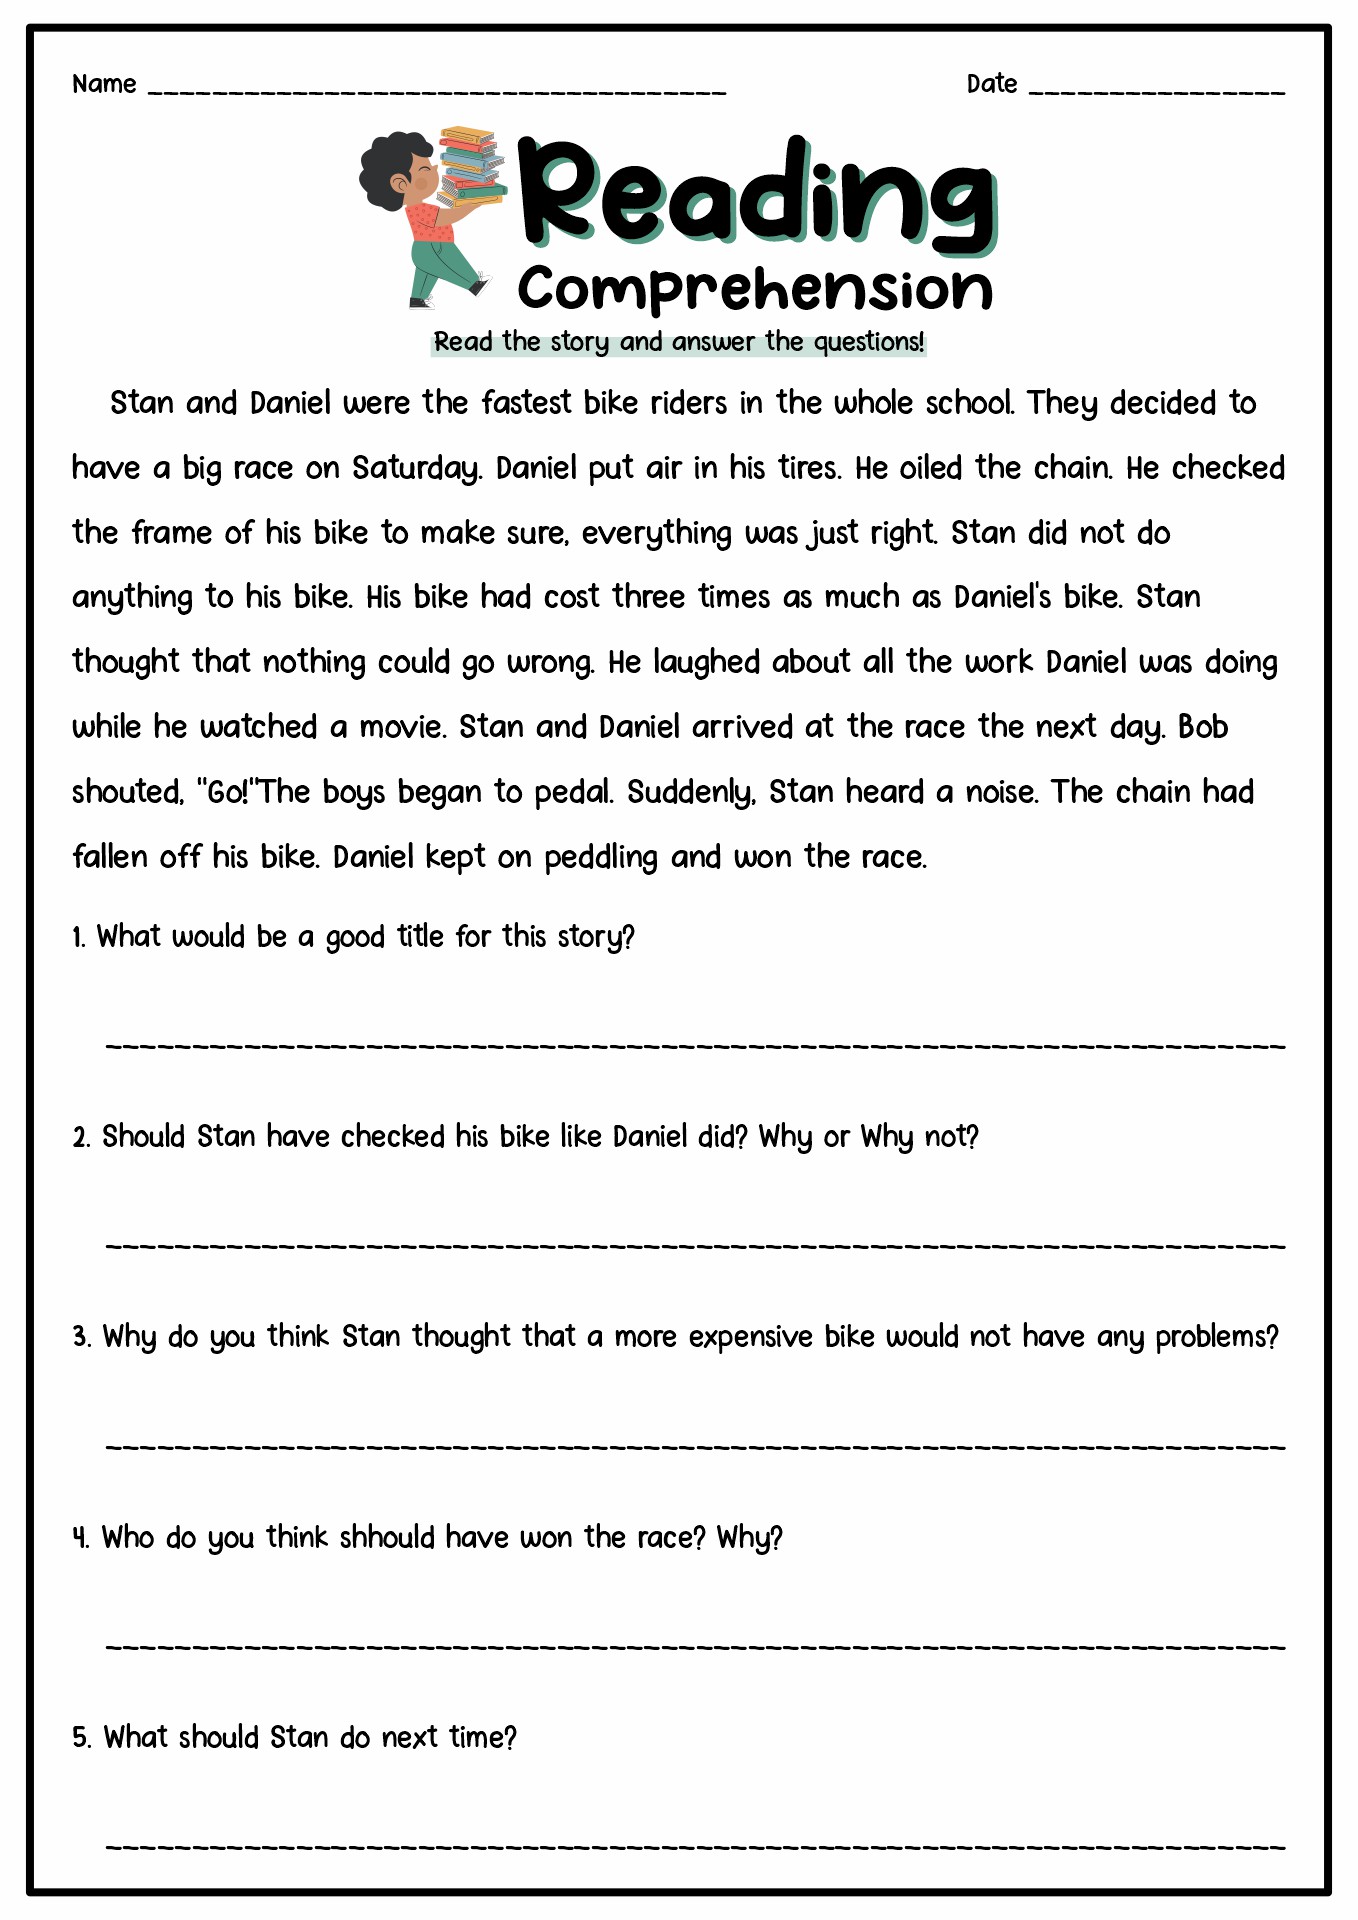 13 Best Images of Short Story Reading Comprehension Worksheets - 1st ...